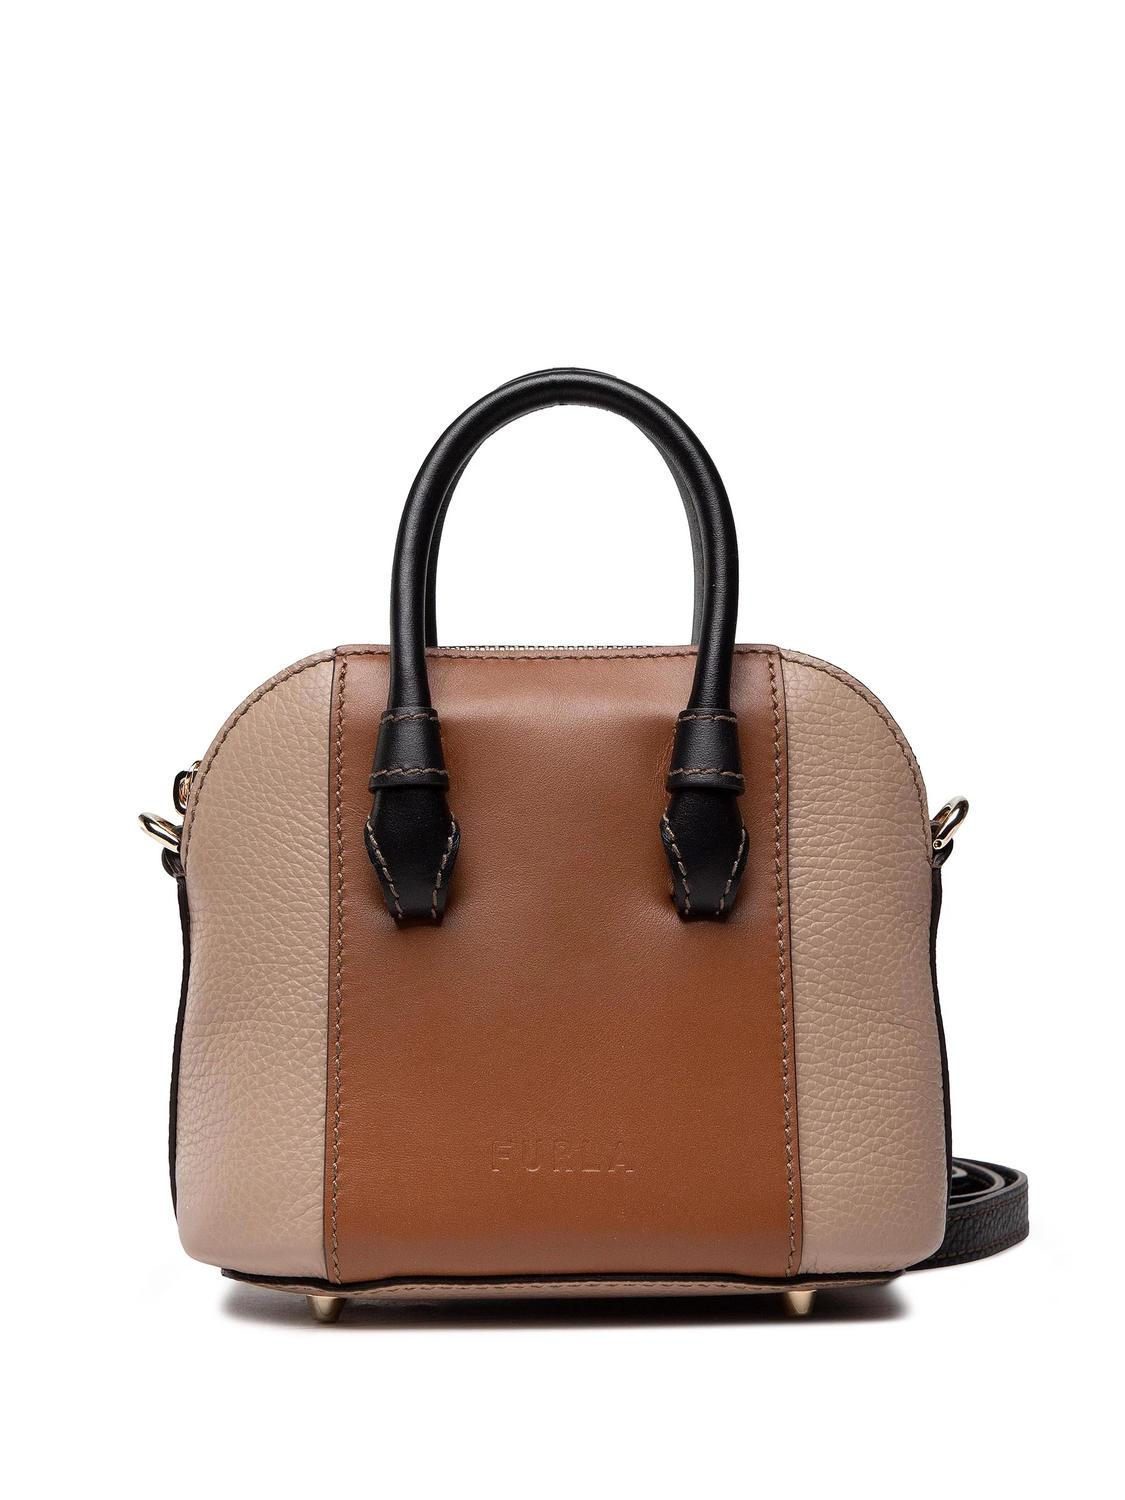 Furla Mia Stella S Dome Handbag in Brown